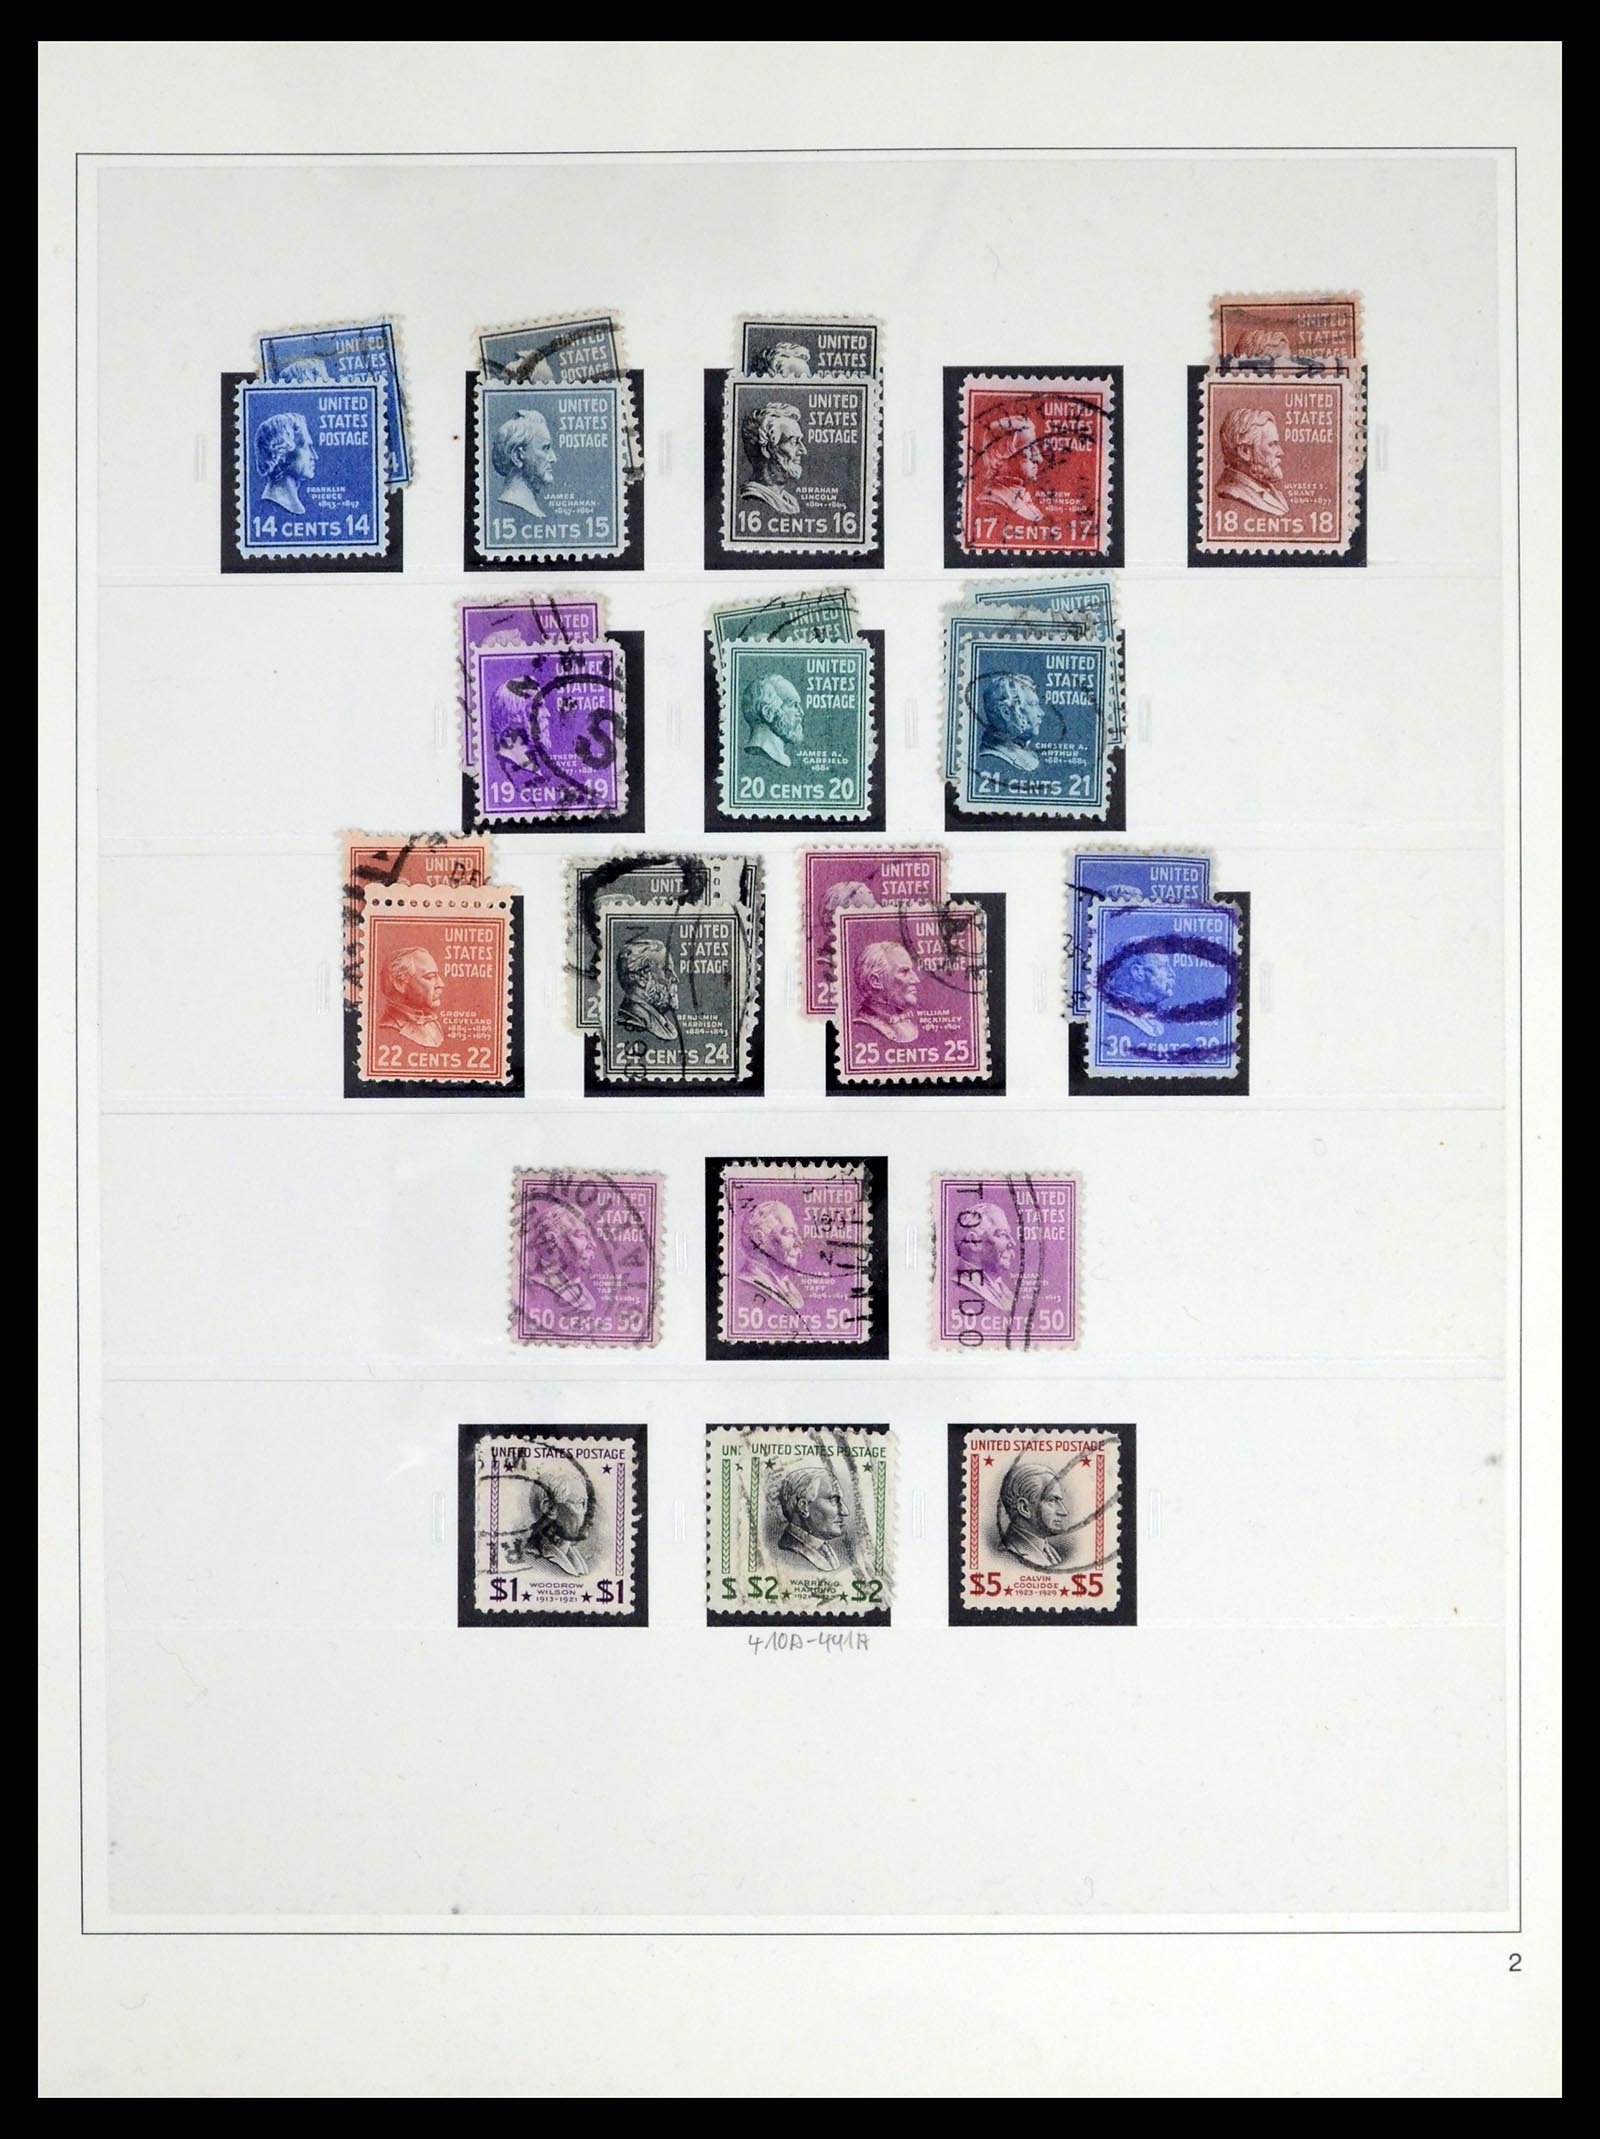 37551 048 - Stamp collection 37551 USA 1851-2001.